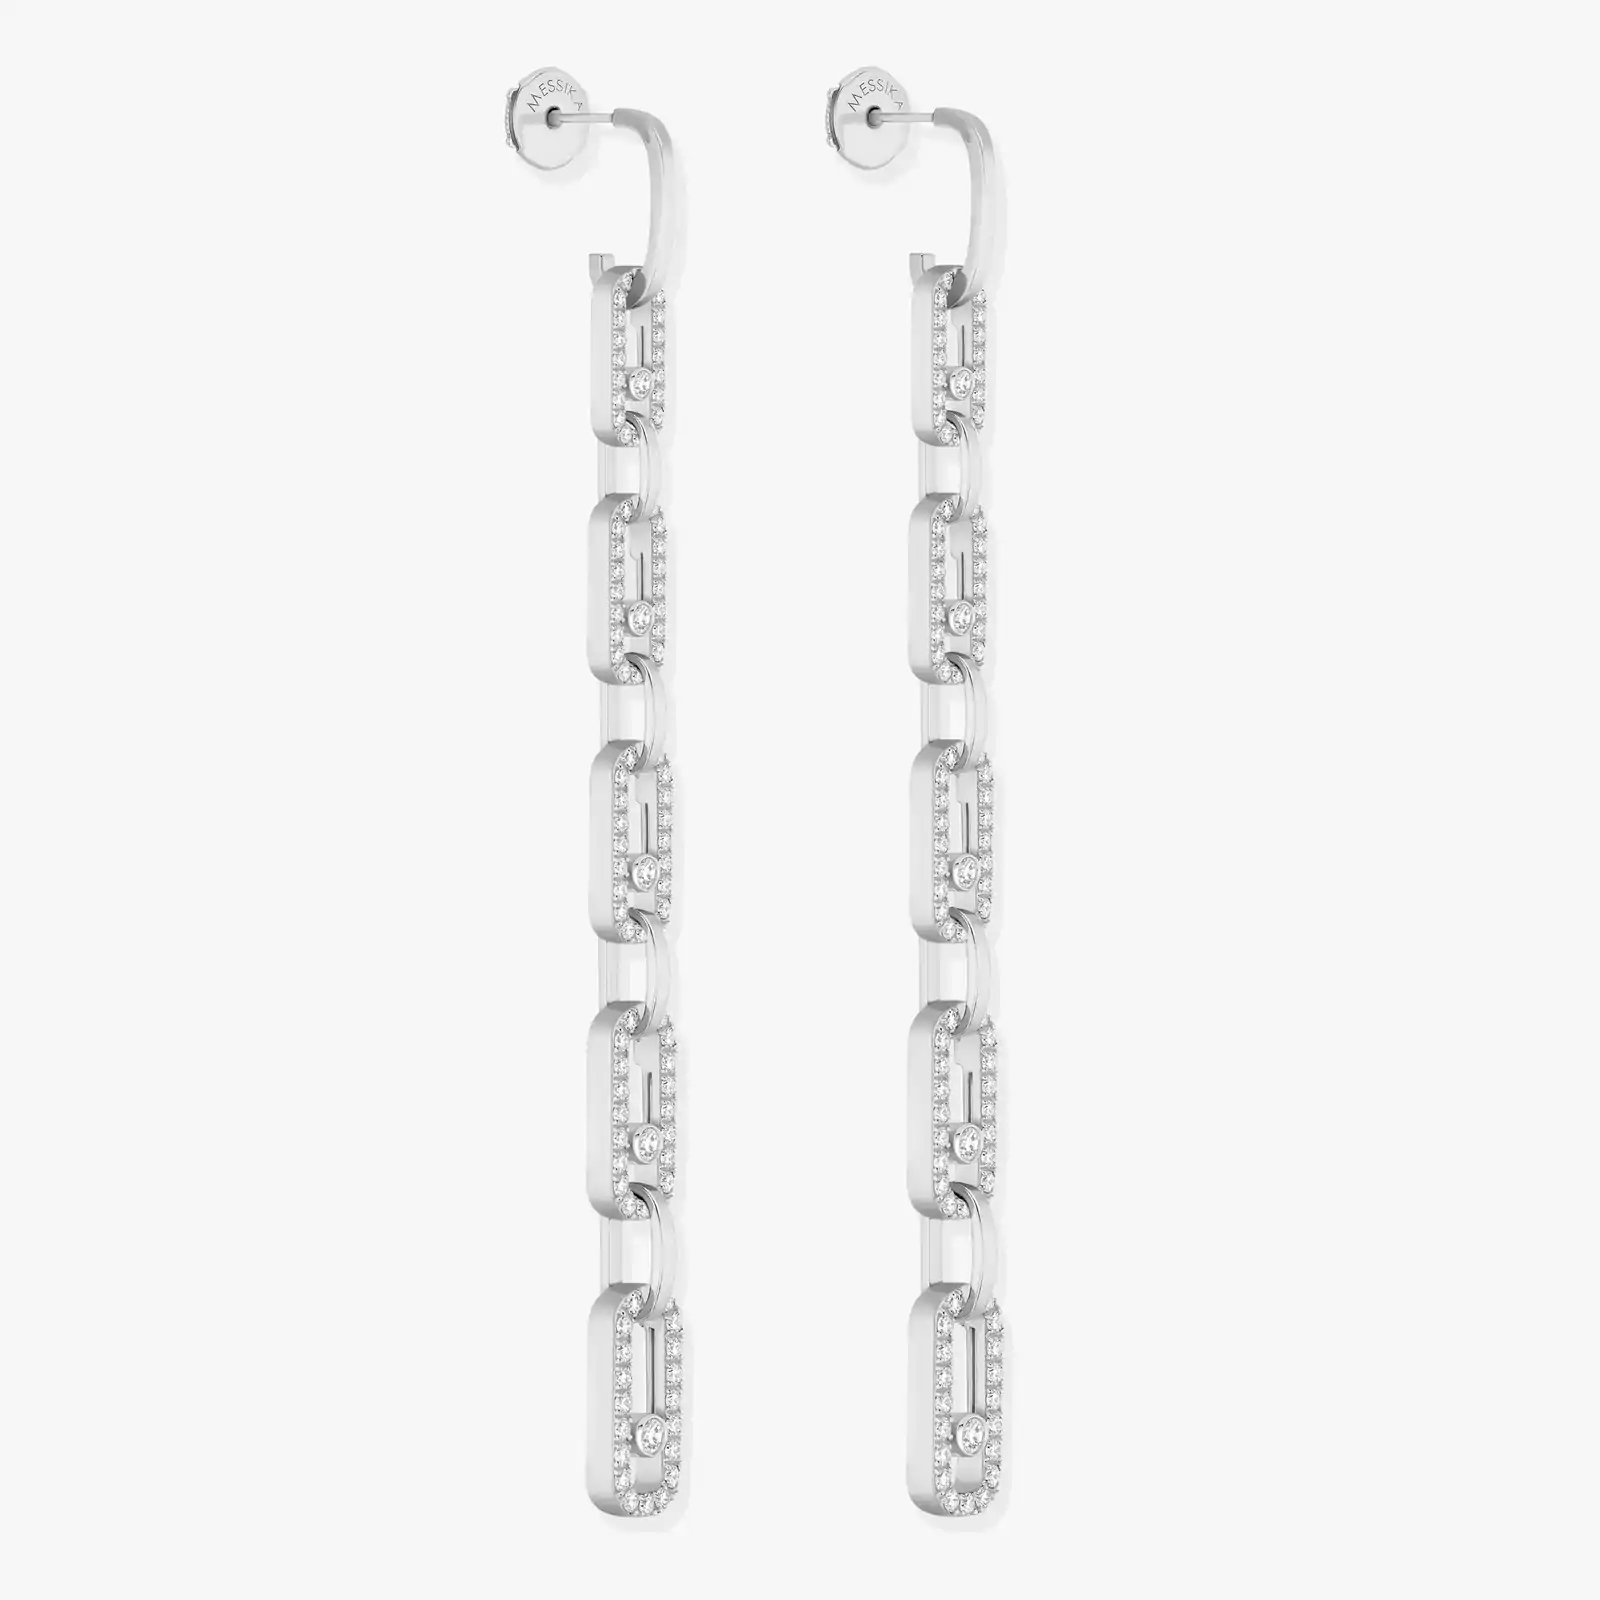 Move Link Multi Pendant Earrings White Gold For Her Diamond Earrings 12011-WG